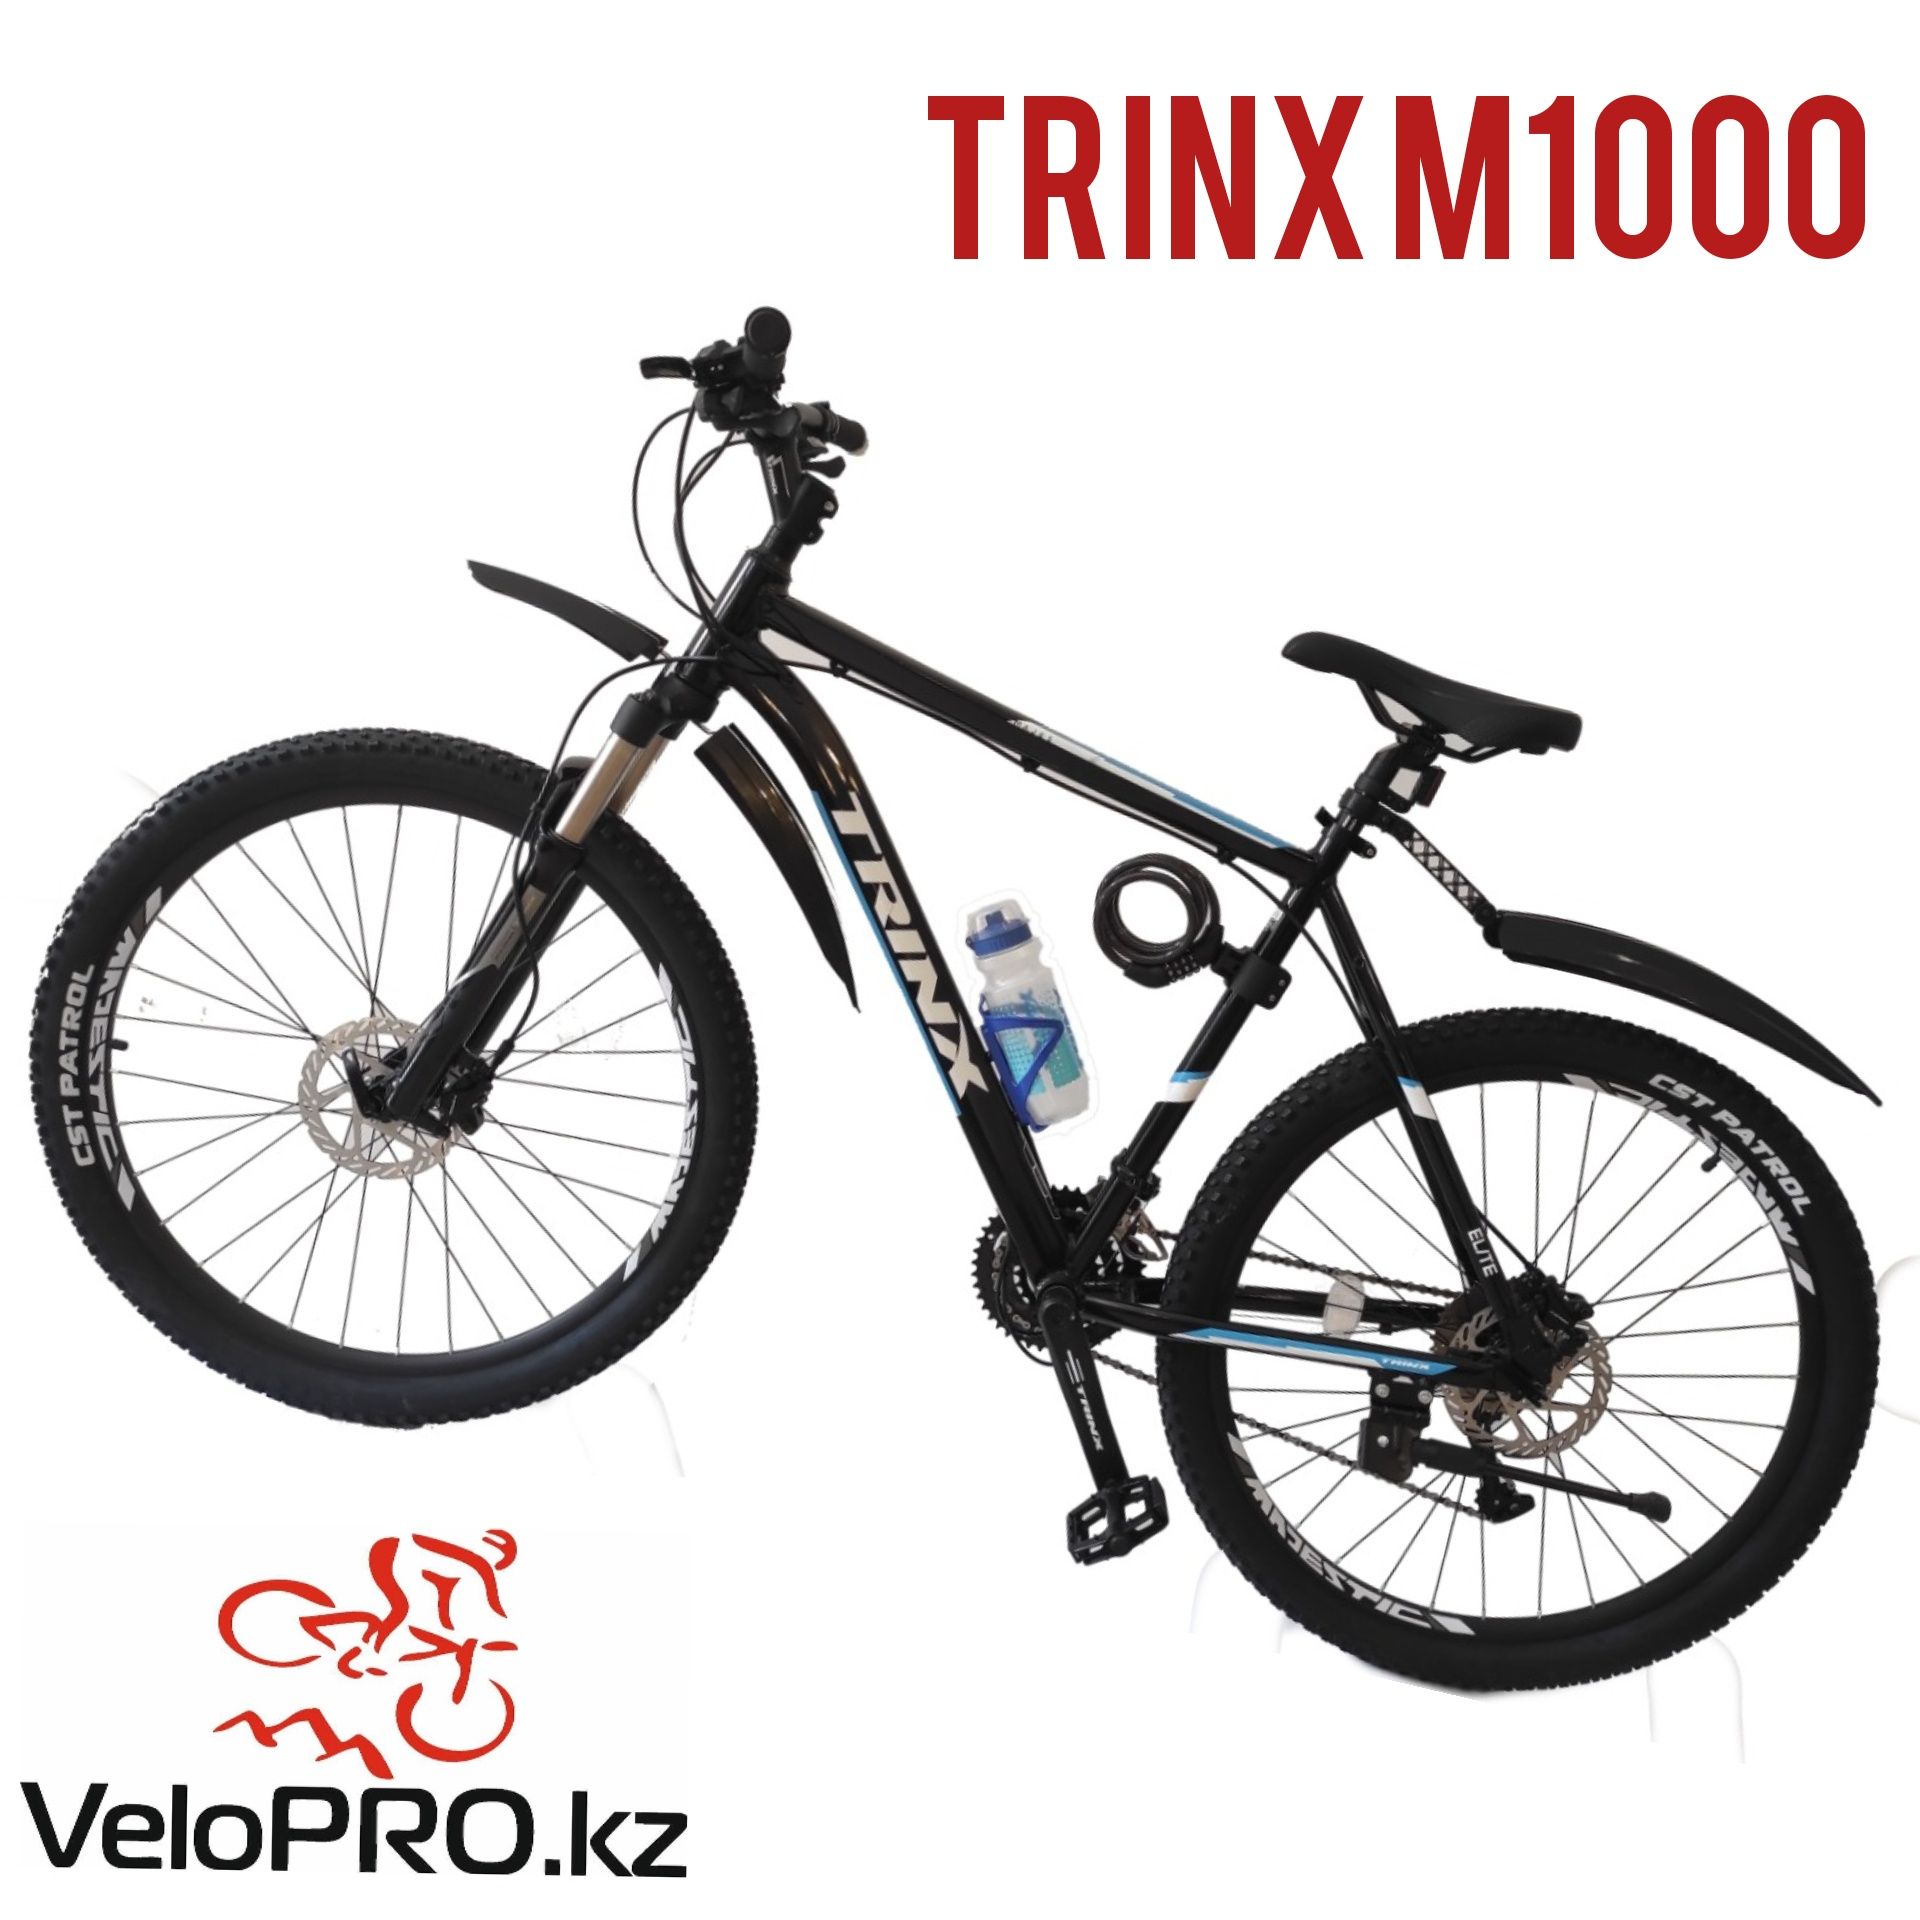 Велосипед Trinx m1000. (Тринкс м1000). Рама 16 и 21". Колеса 29".